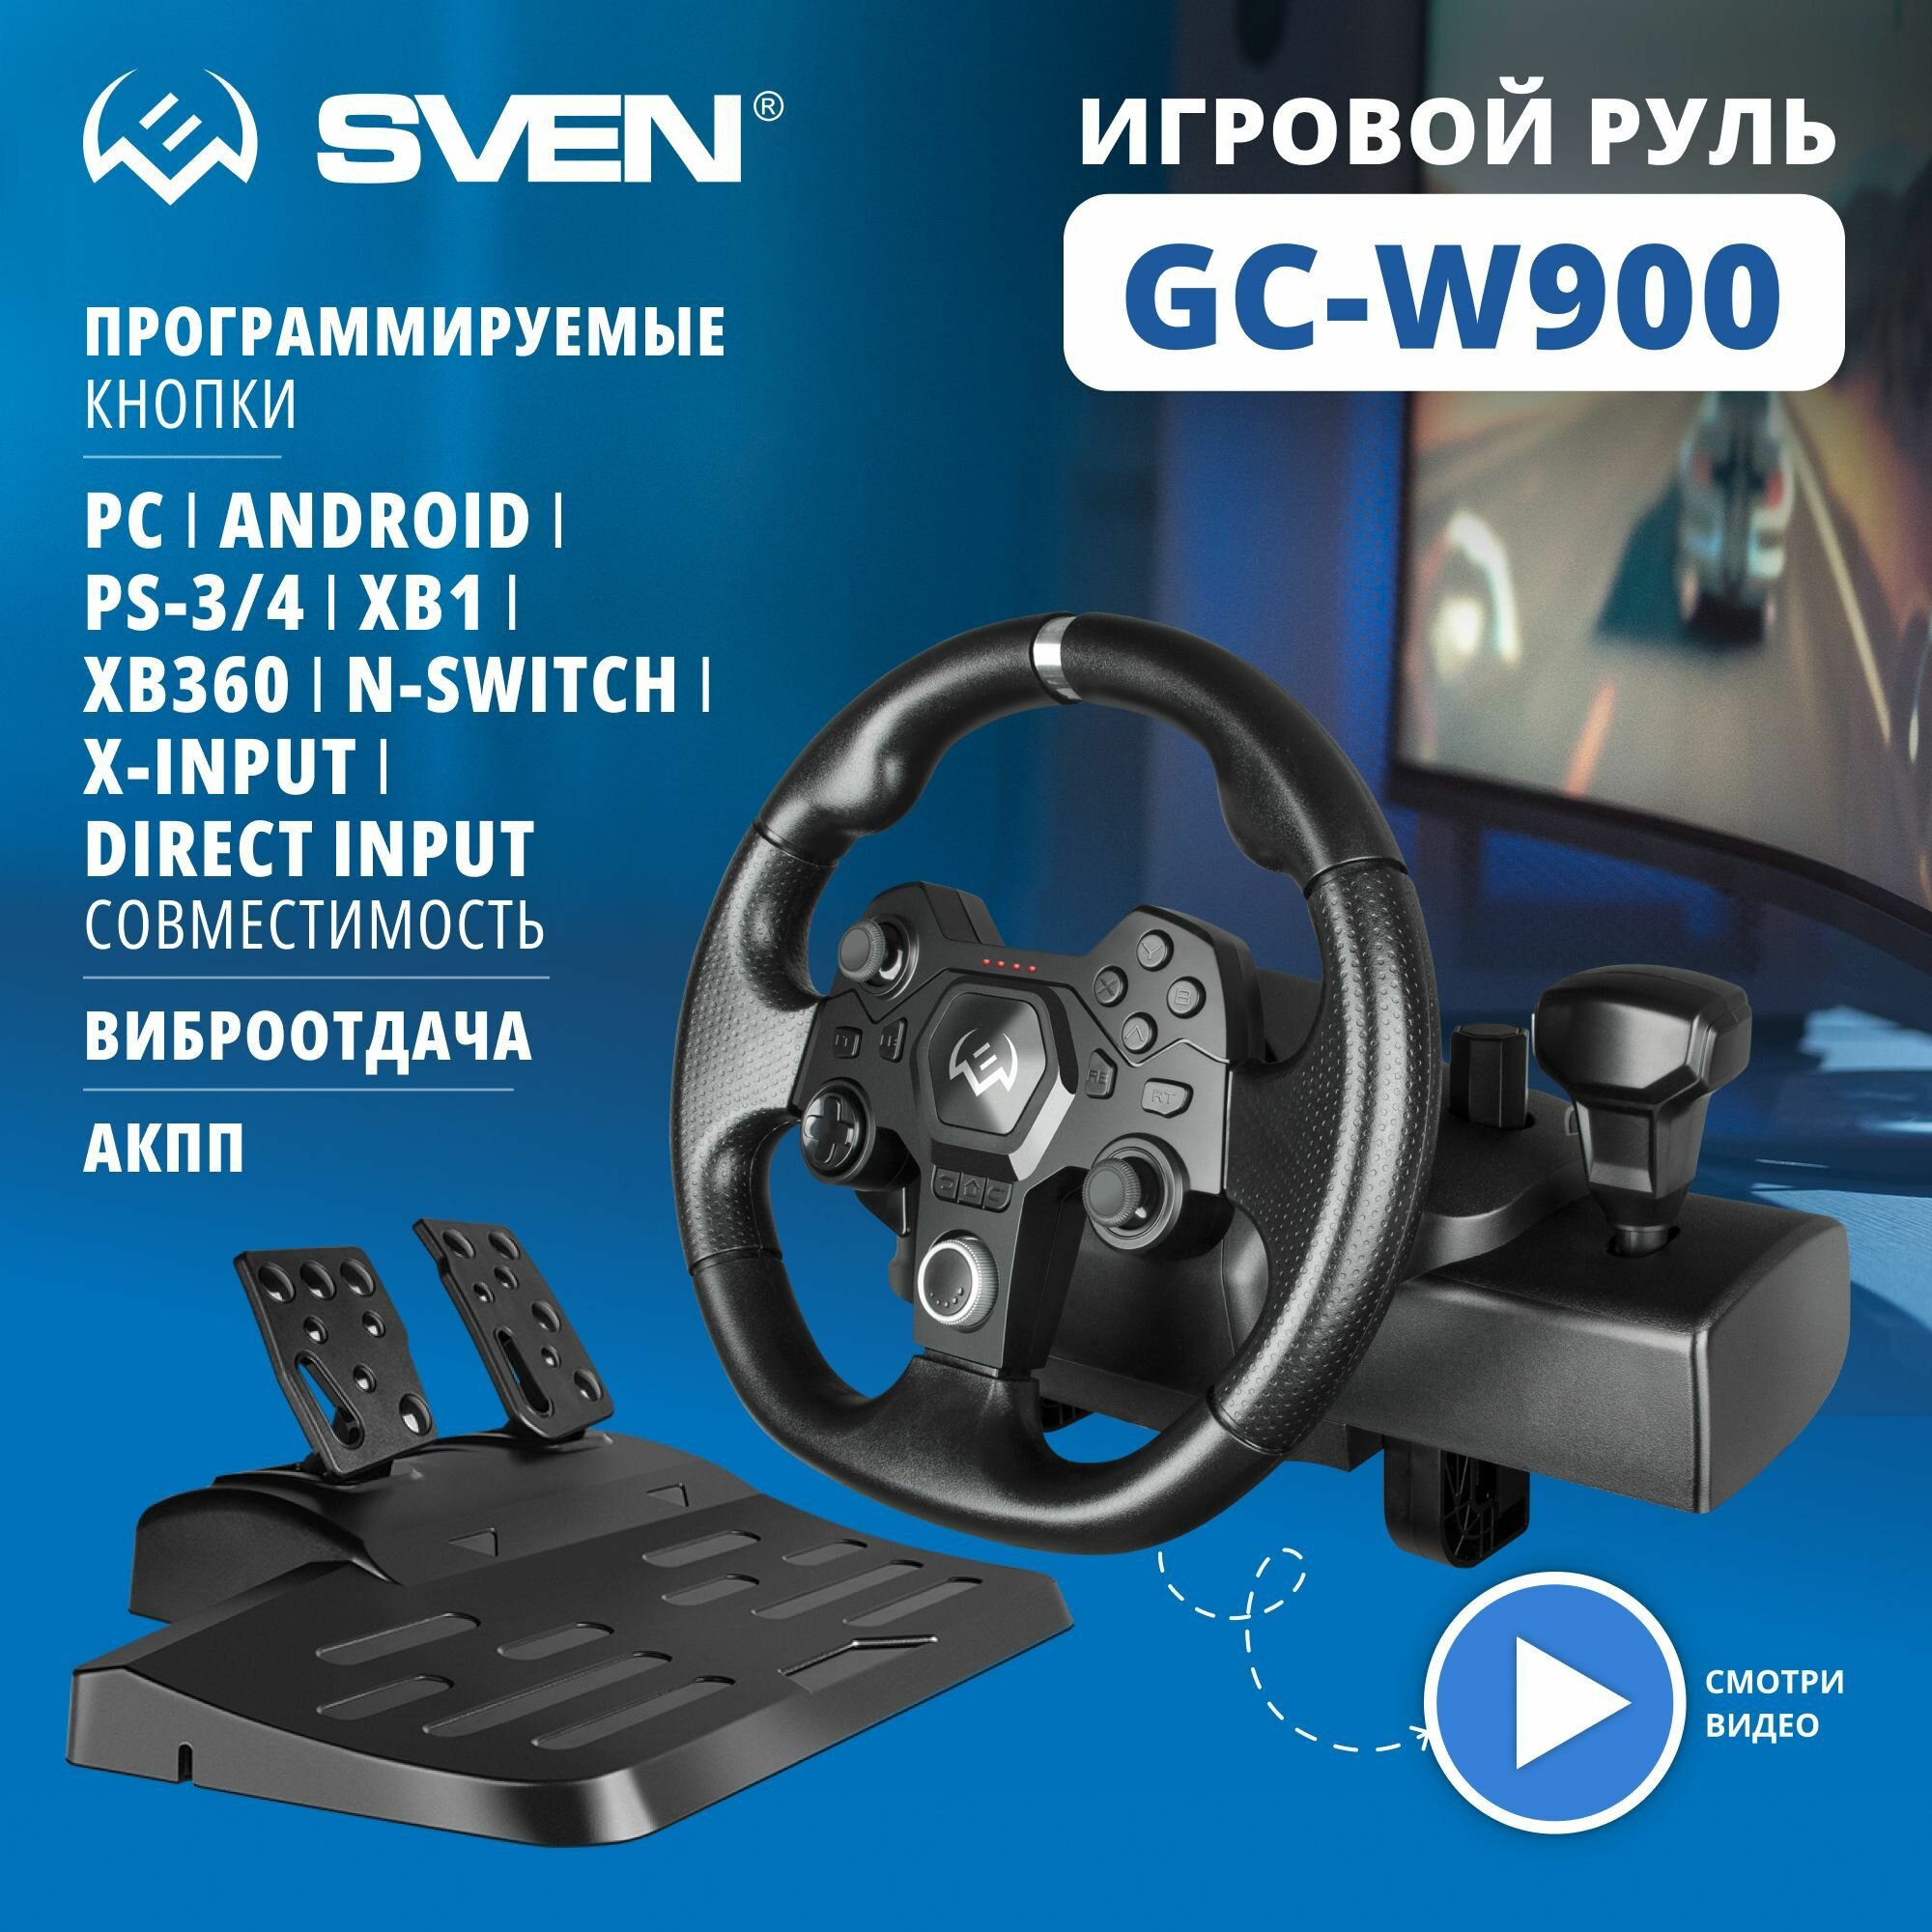 Руль SVEN GC-W900